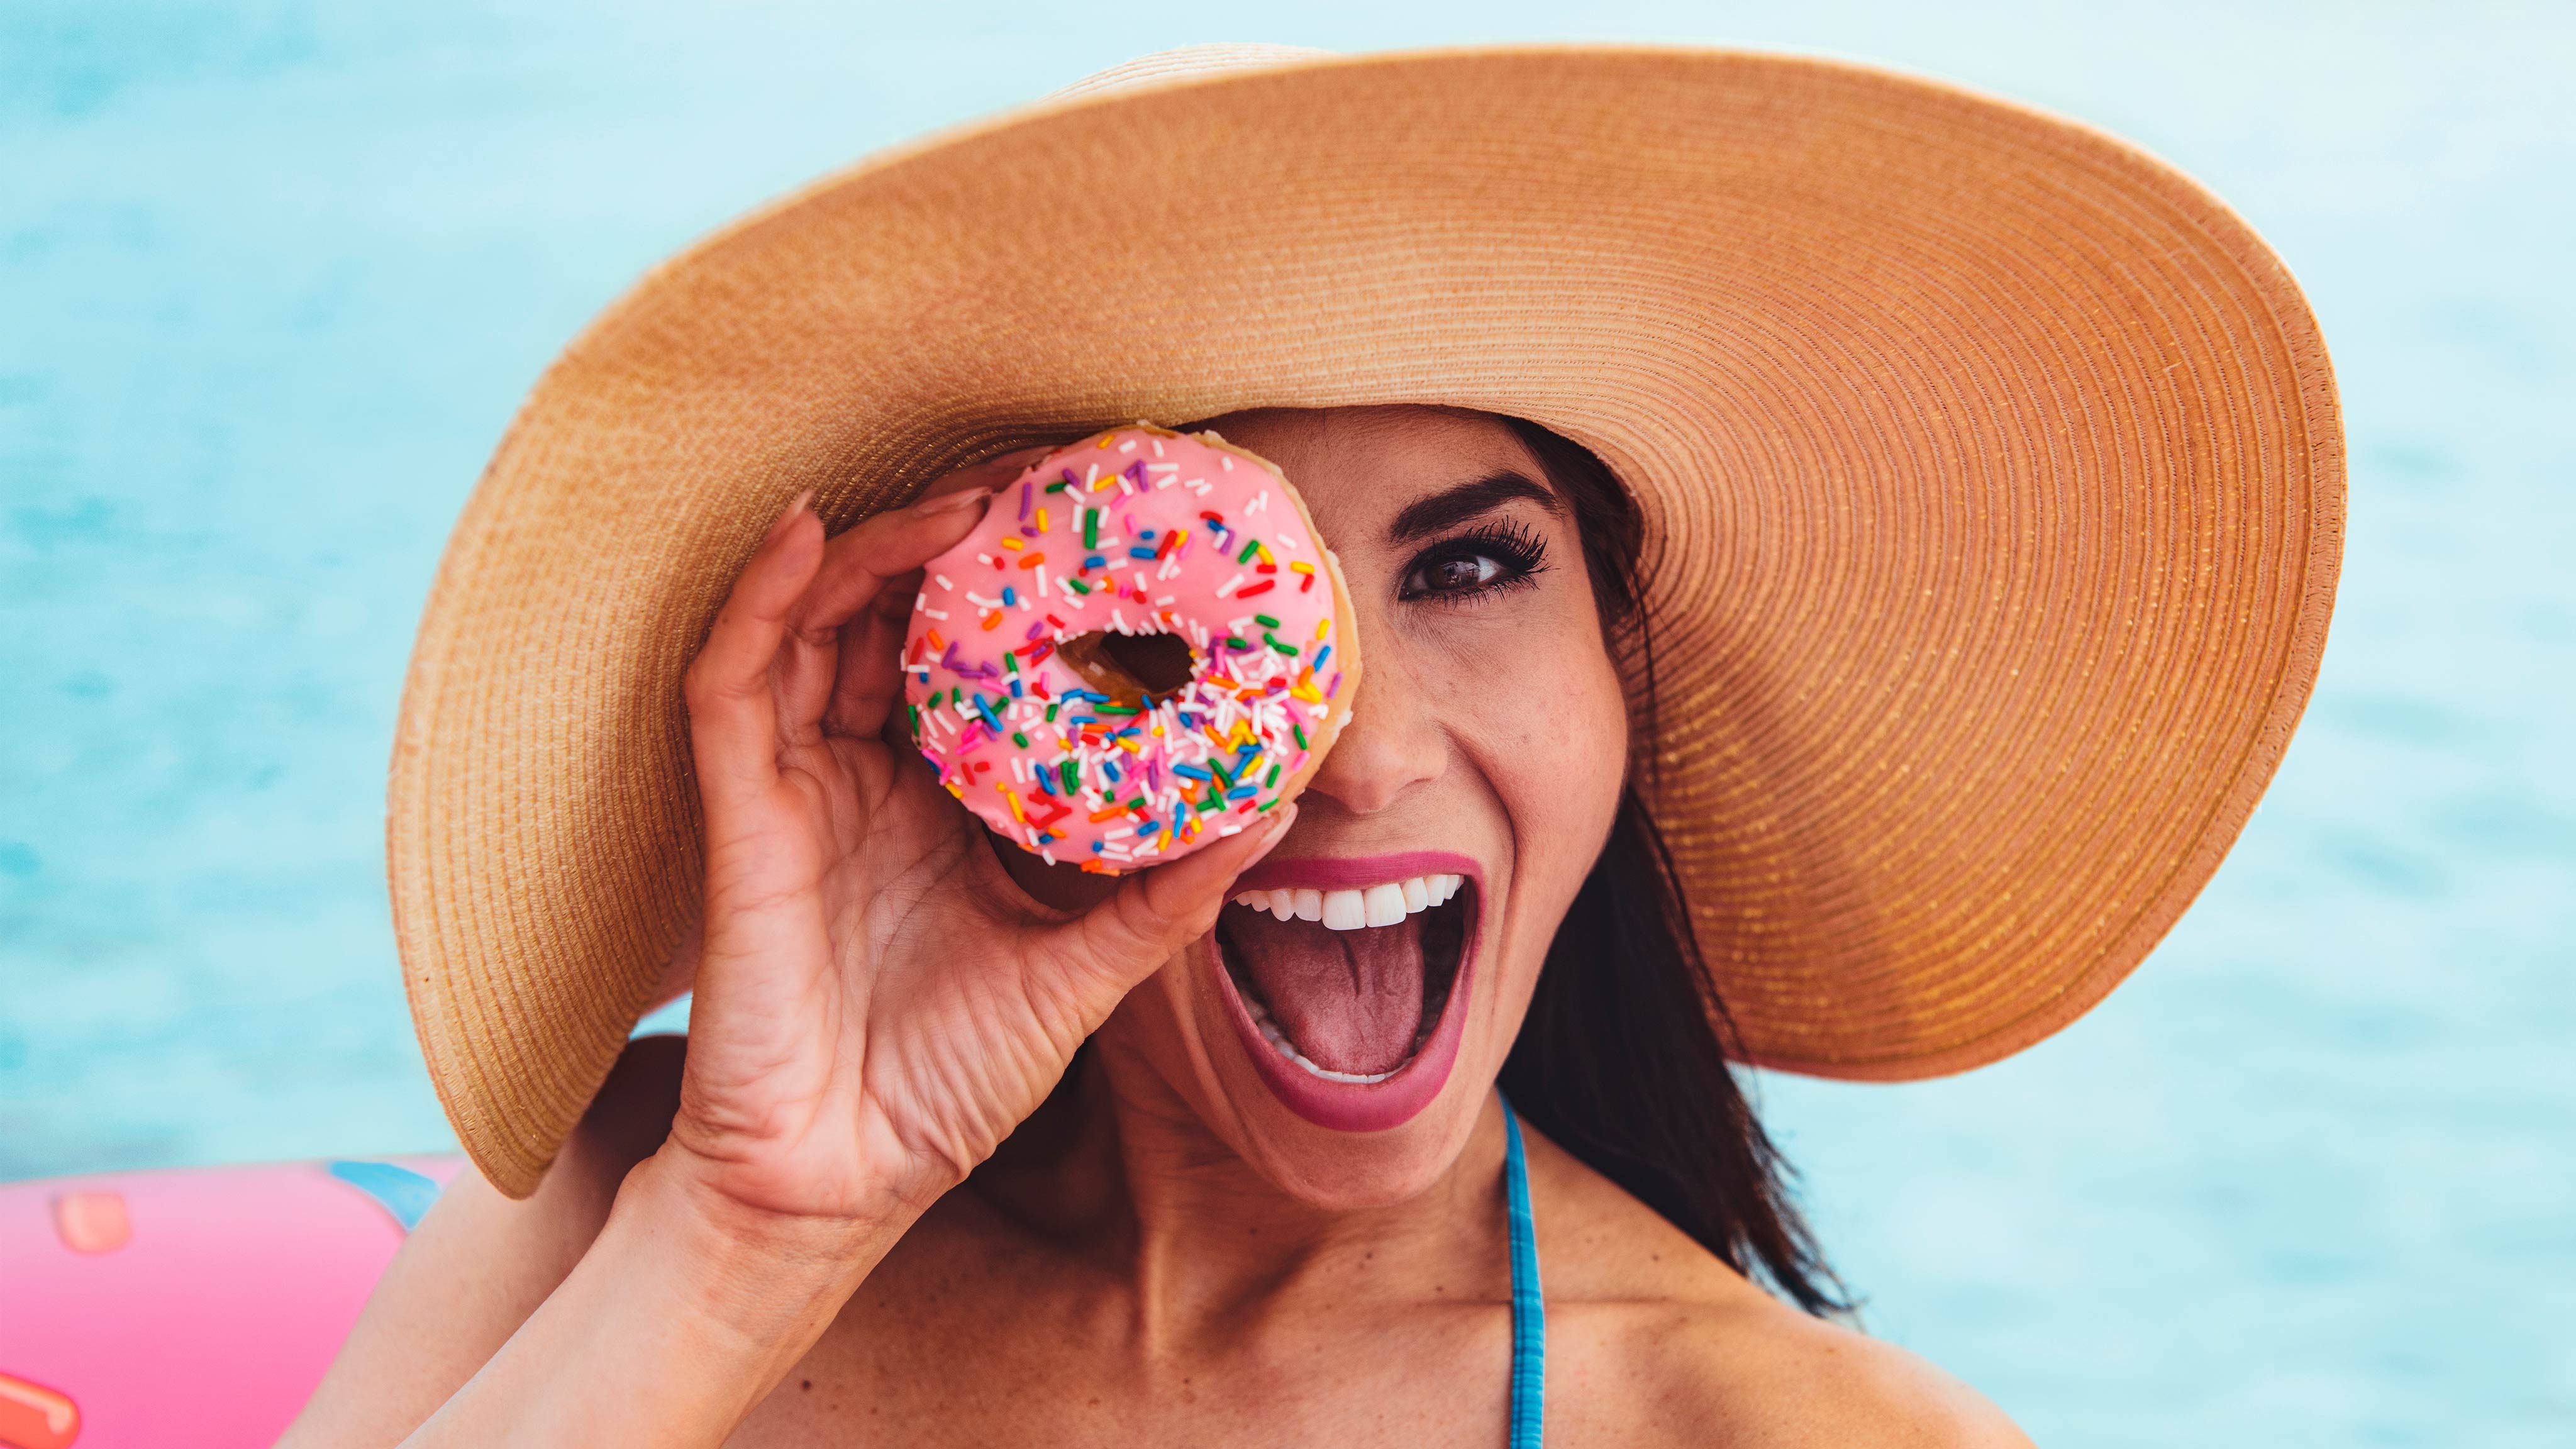  Gruaja e qeshur ndërsa mban një donut